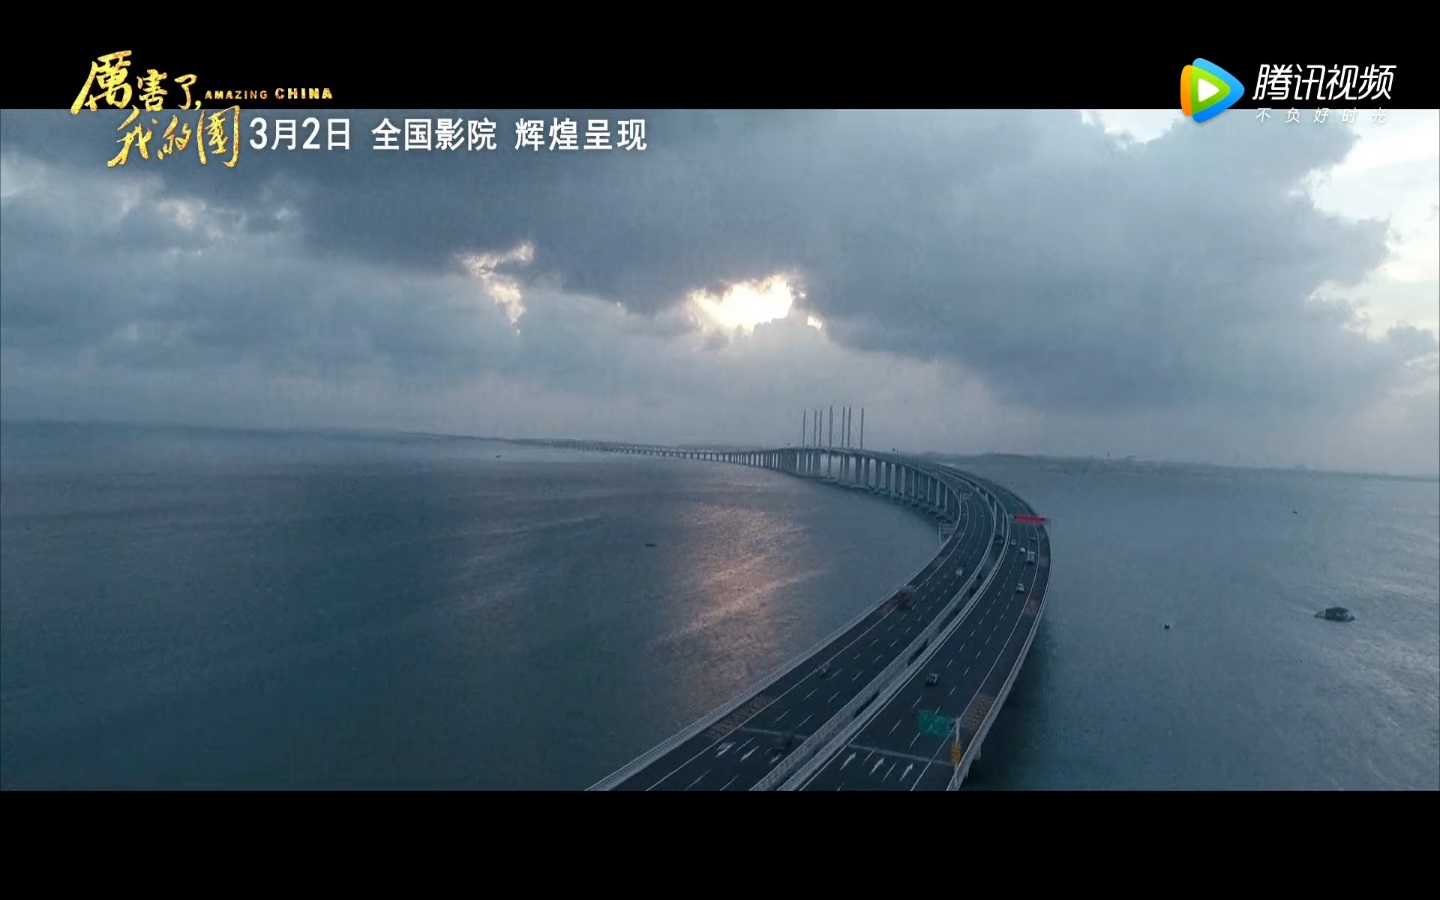 青岛海湾大桥——OVM锚具